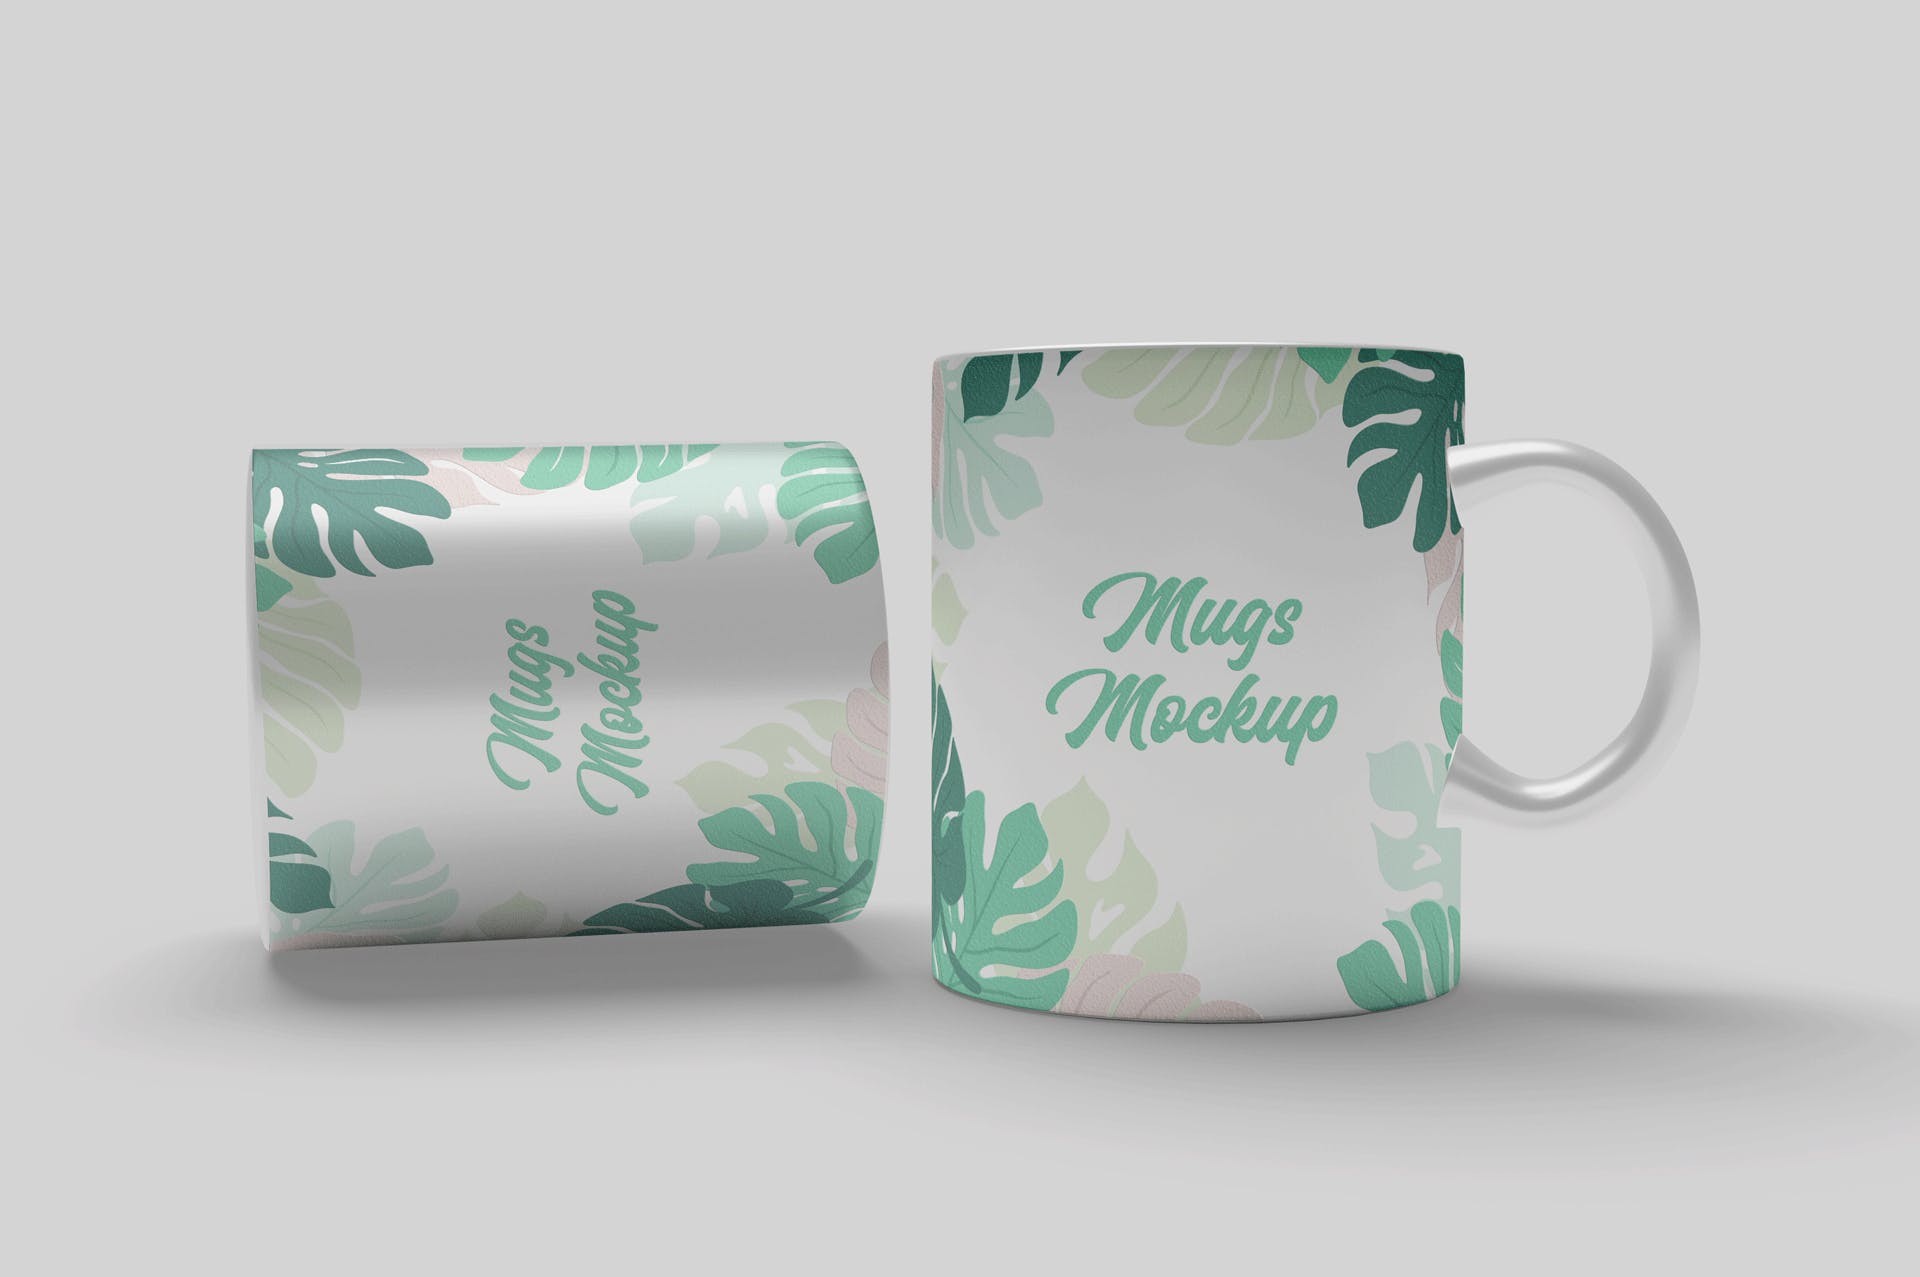 陶瓷马克杯印花图案设计预览第一素材精选 Mug Mockups插图(1)